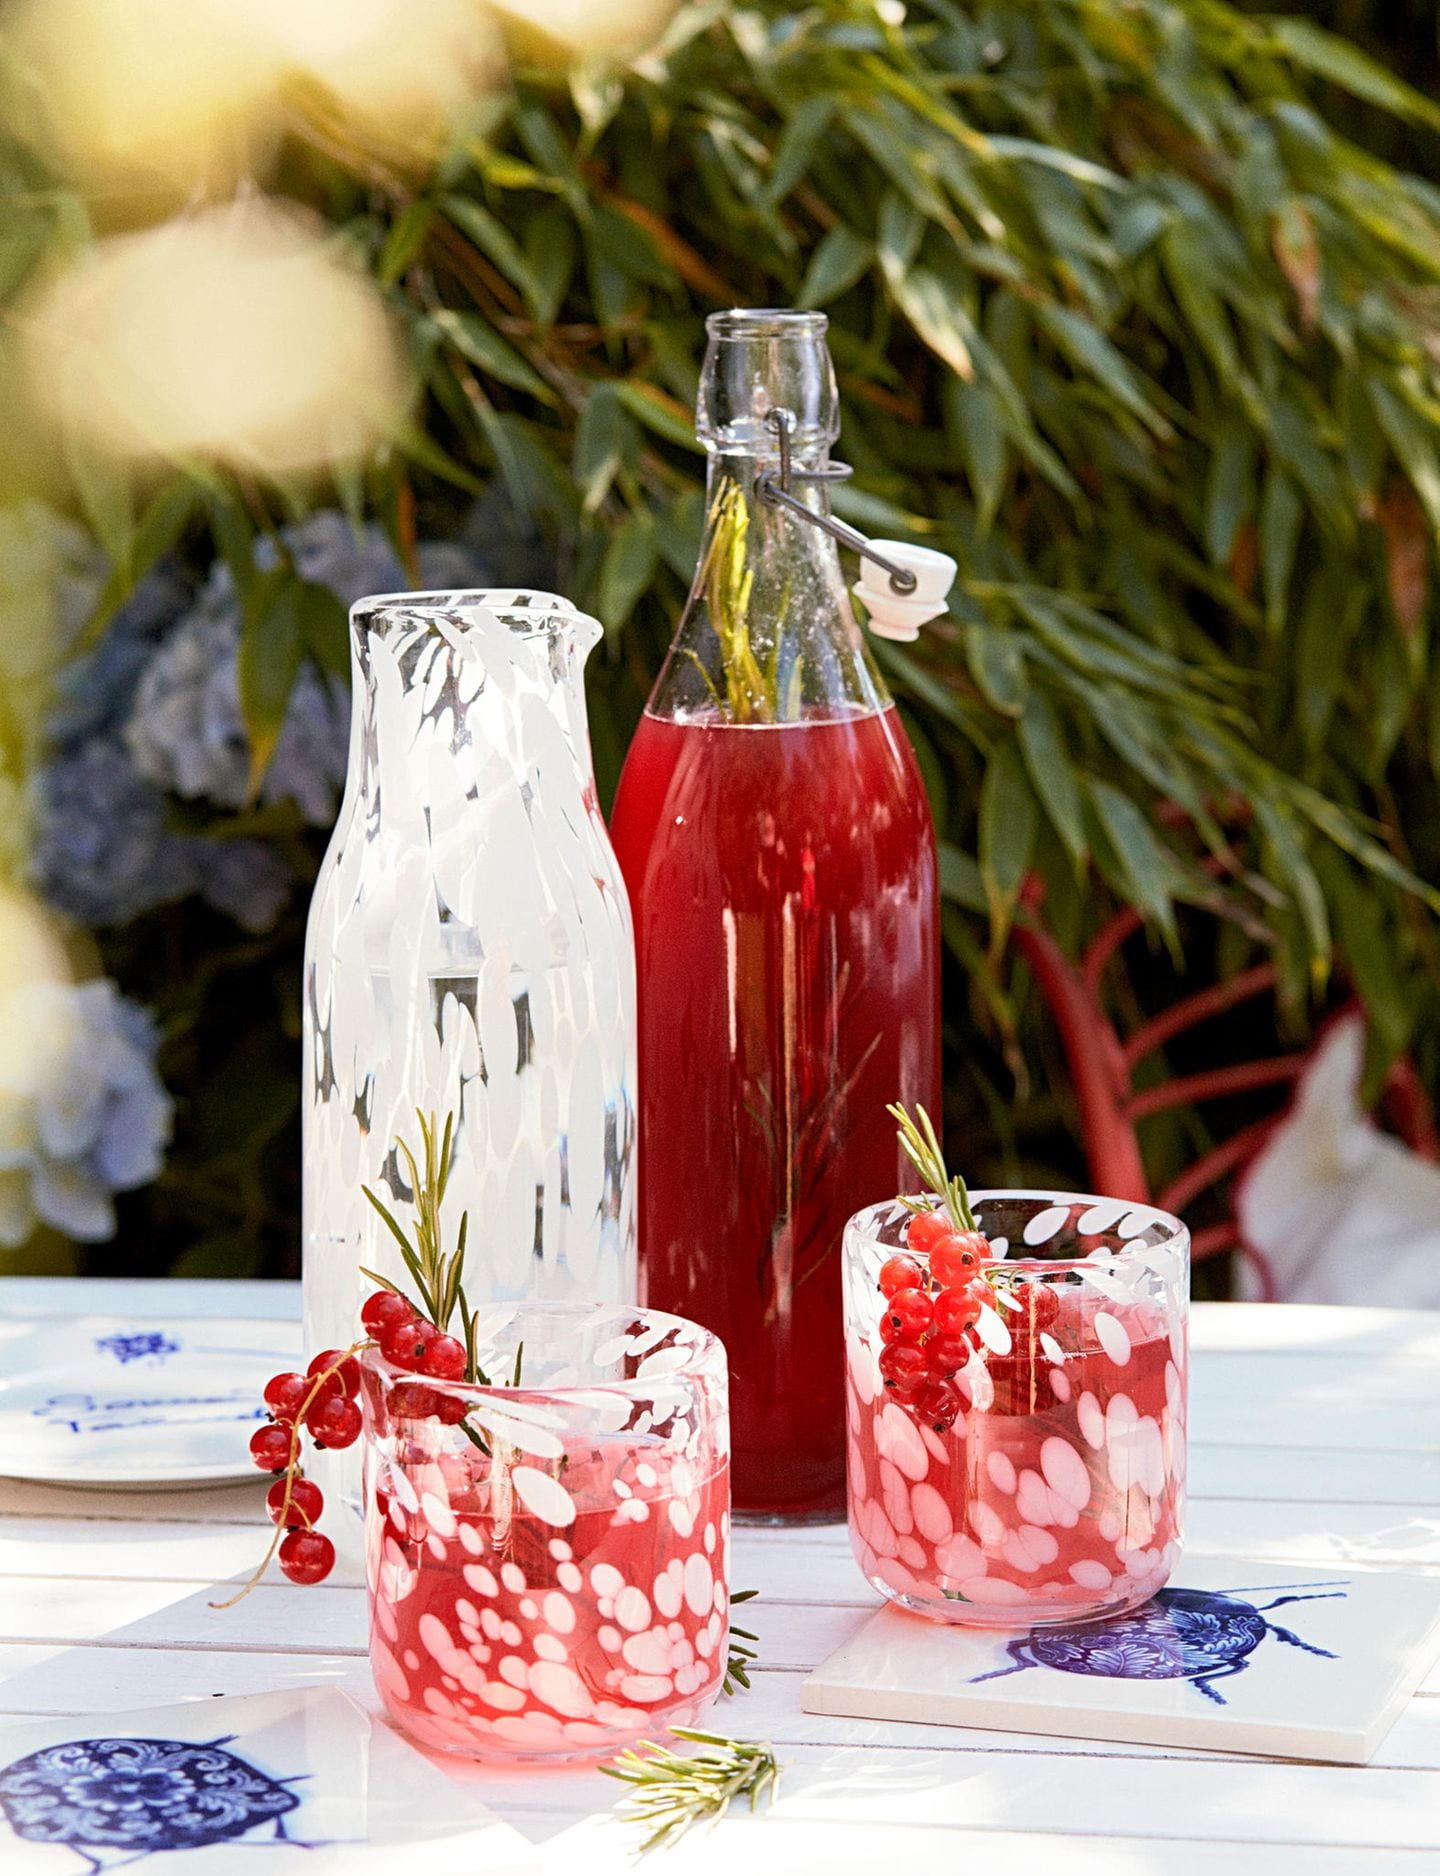 Gläser und Flasche mit rotem Sirup auf einem Tisch